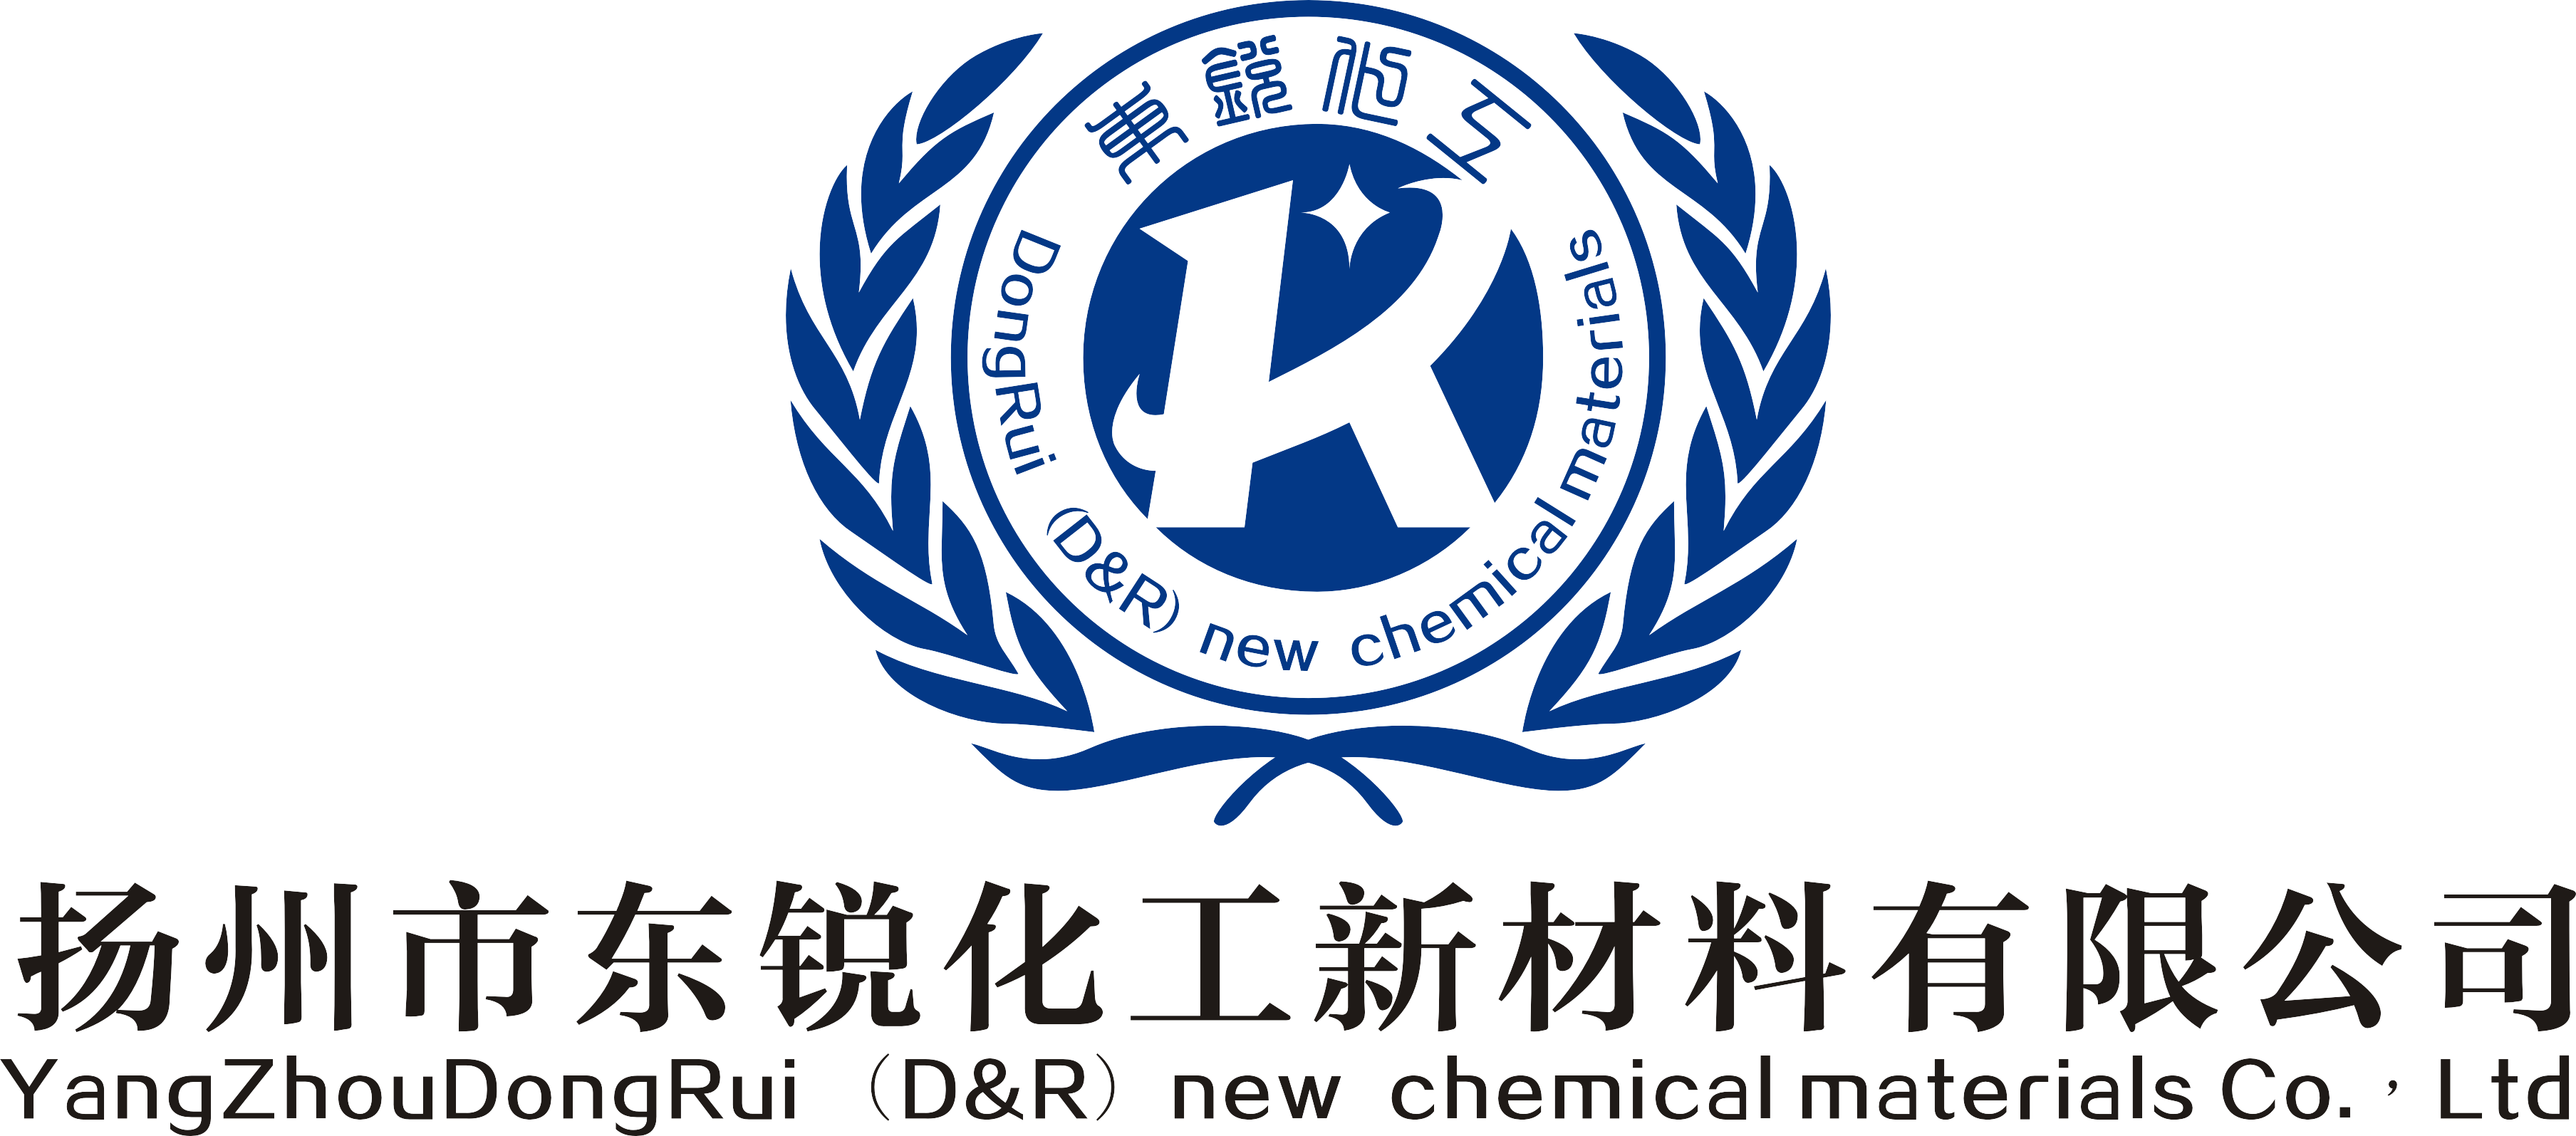 扬州市东锐化工新材料有限公司logo